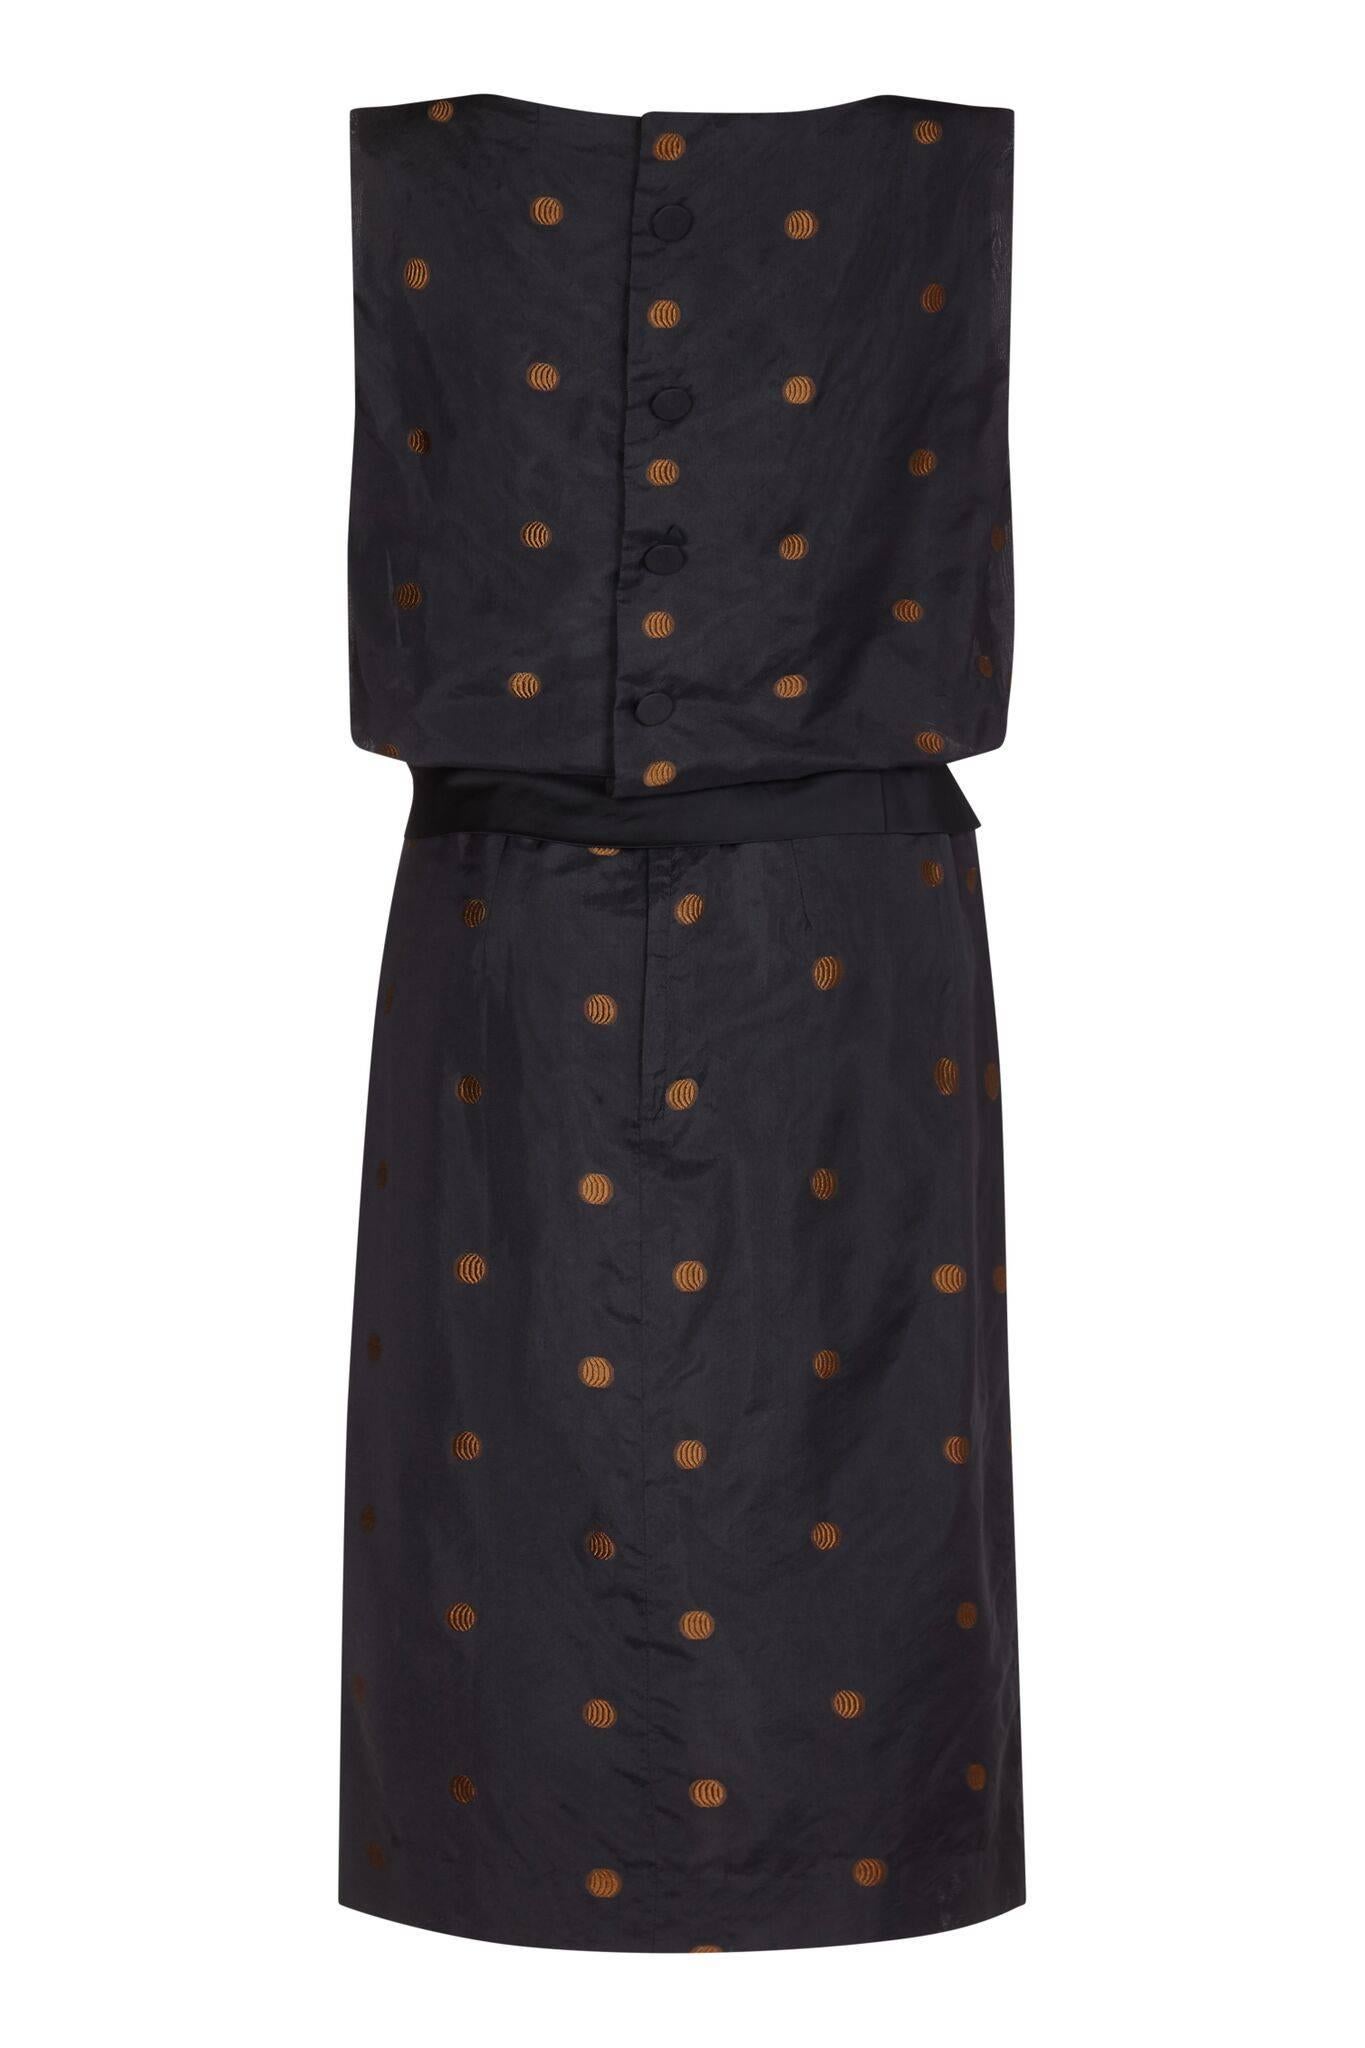 Cette élégante robe en taffetas de soie noire Kitty Copeland des années 1950, avec des détails à pois et une ceinture péplum, présente un chic urbain intemporel et des caractéristiques de conception inhabituelles. Le taffetas est recouvert d'un